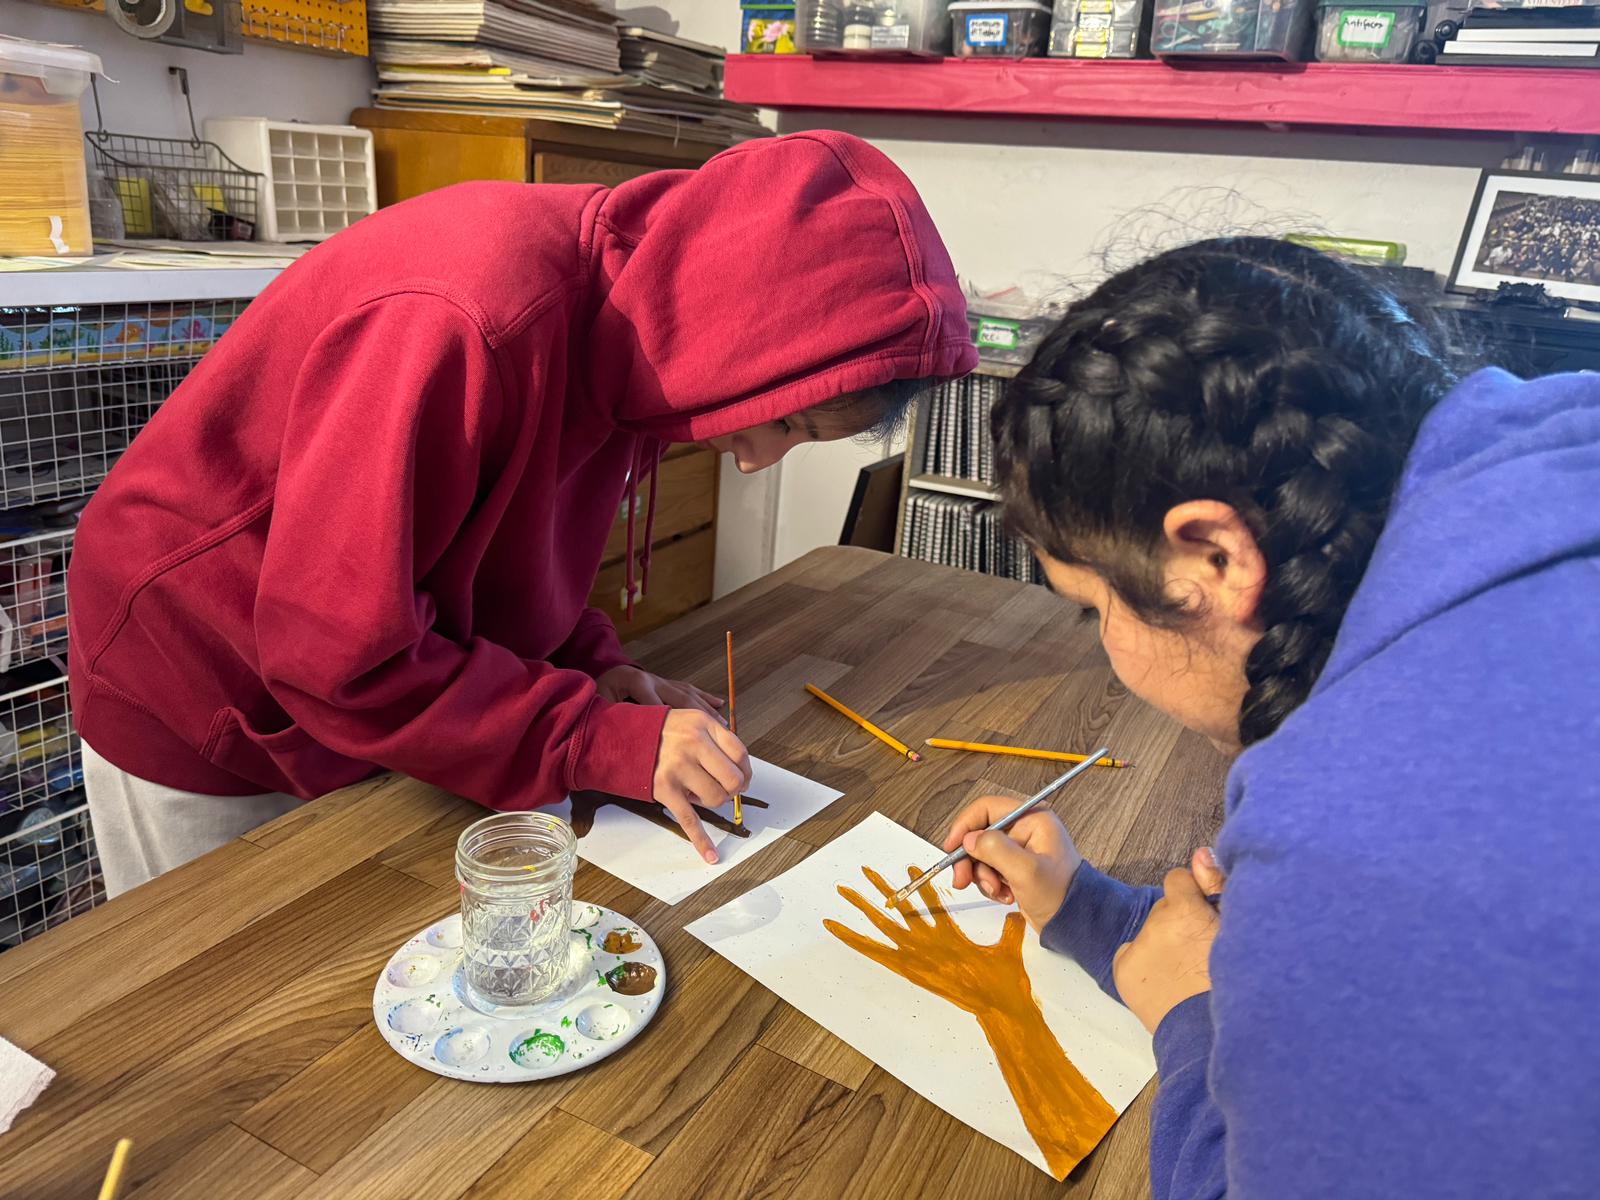 Niños de Casa Círculo Cultural utilizan el arte para contrarrestar el odio